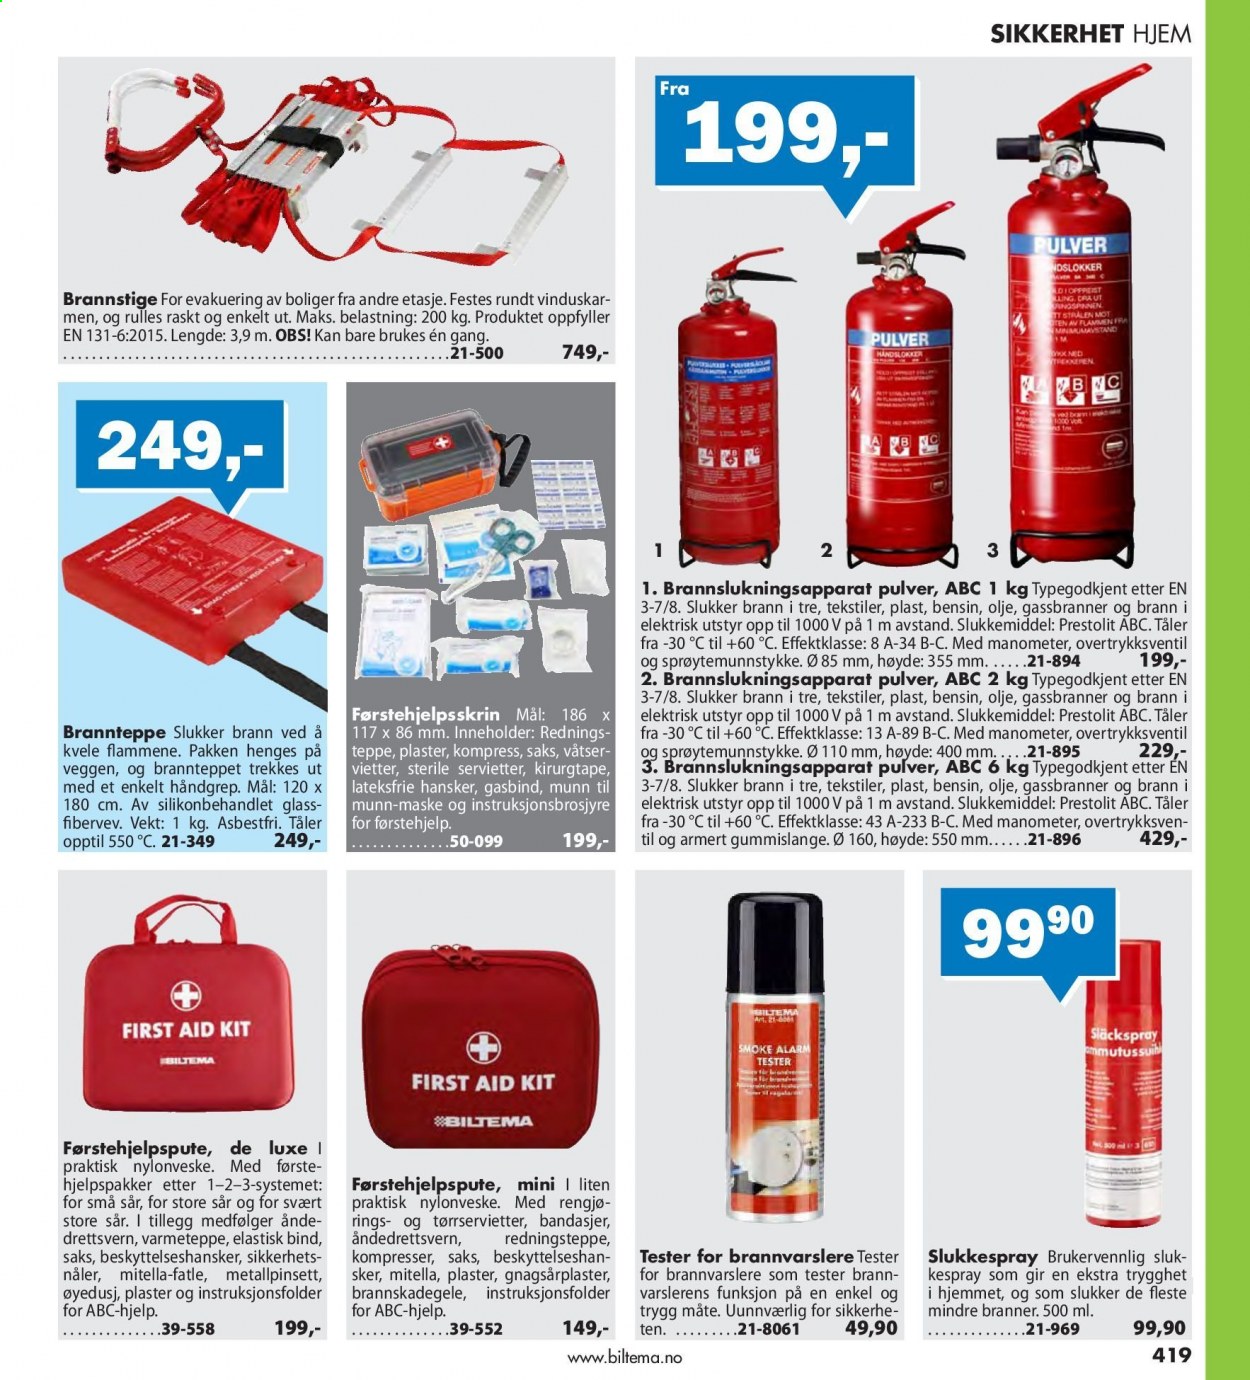 thumbnail - Kundeavis Biltema - Produkter fra tilbudsaviser - brannstige, teppe, hansker. Side 419.